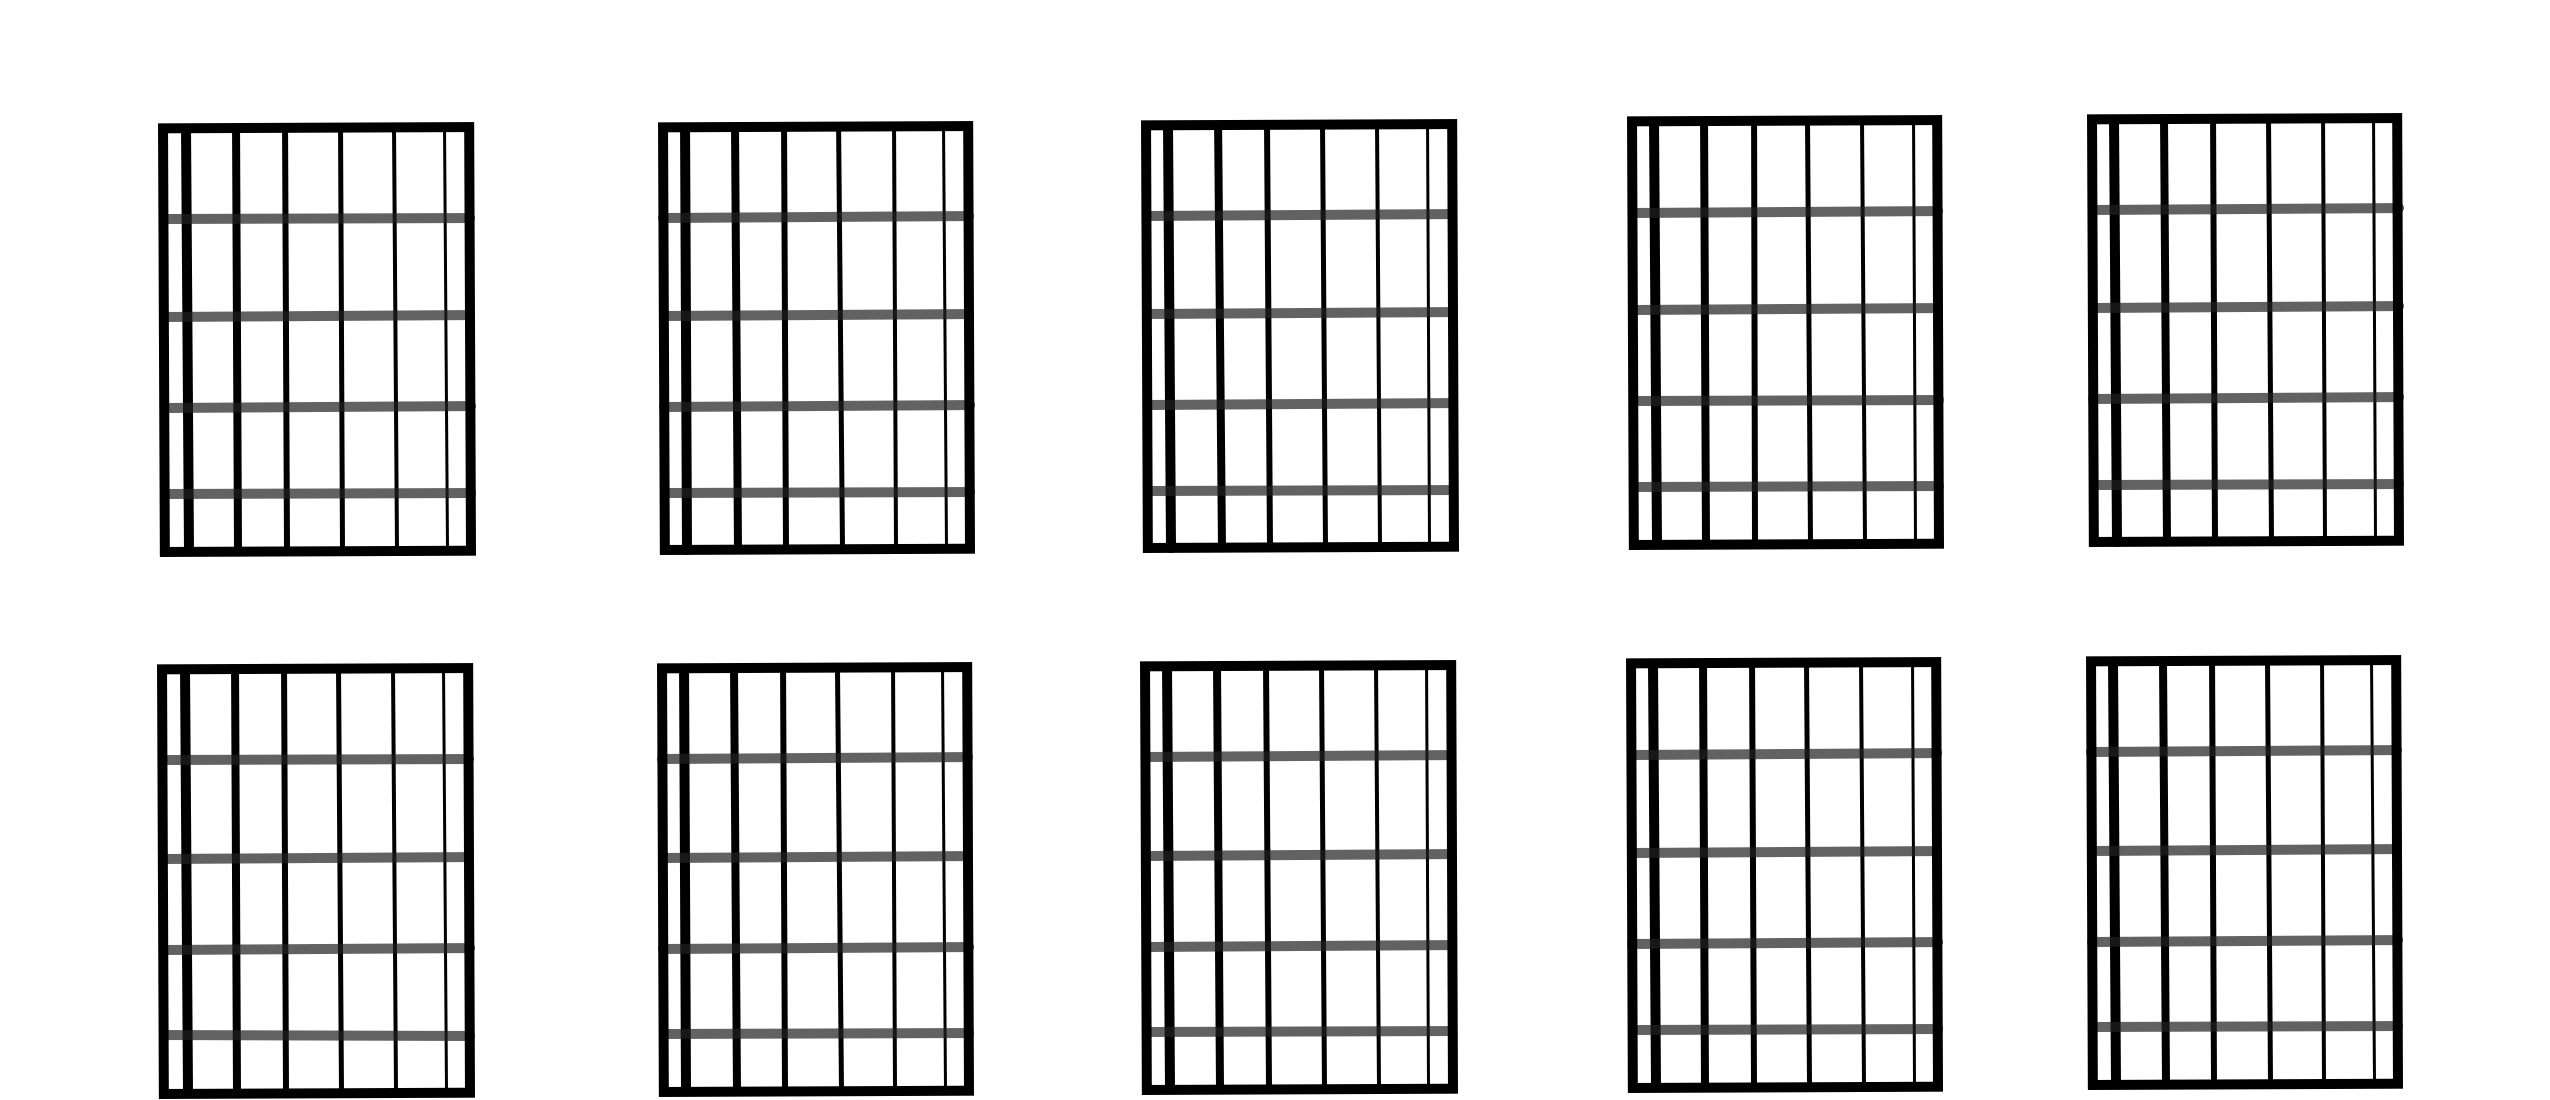 Printable Guitar Tab Chart